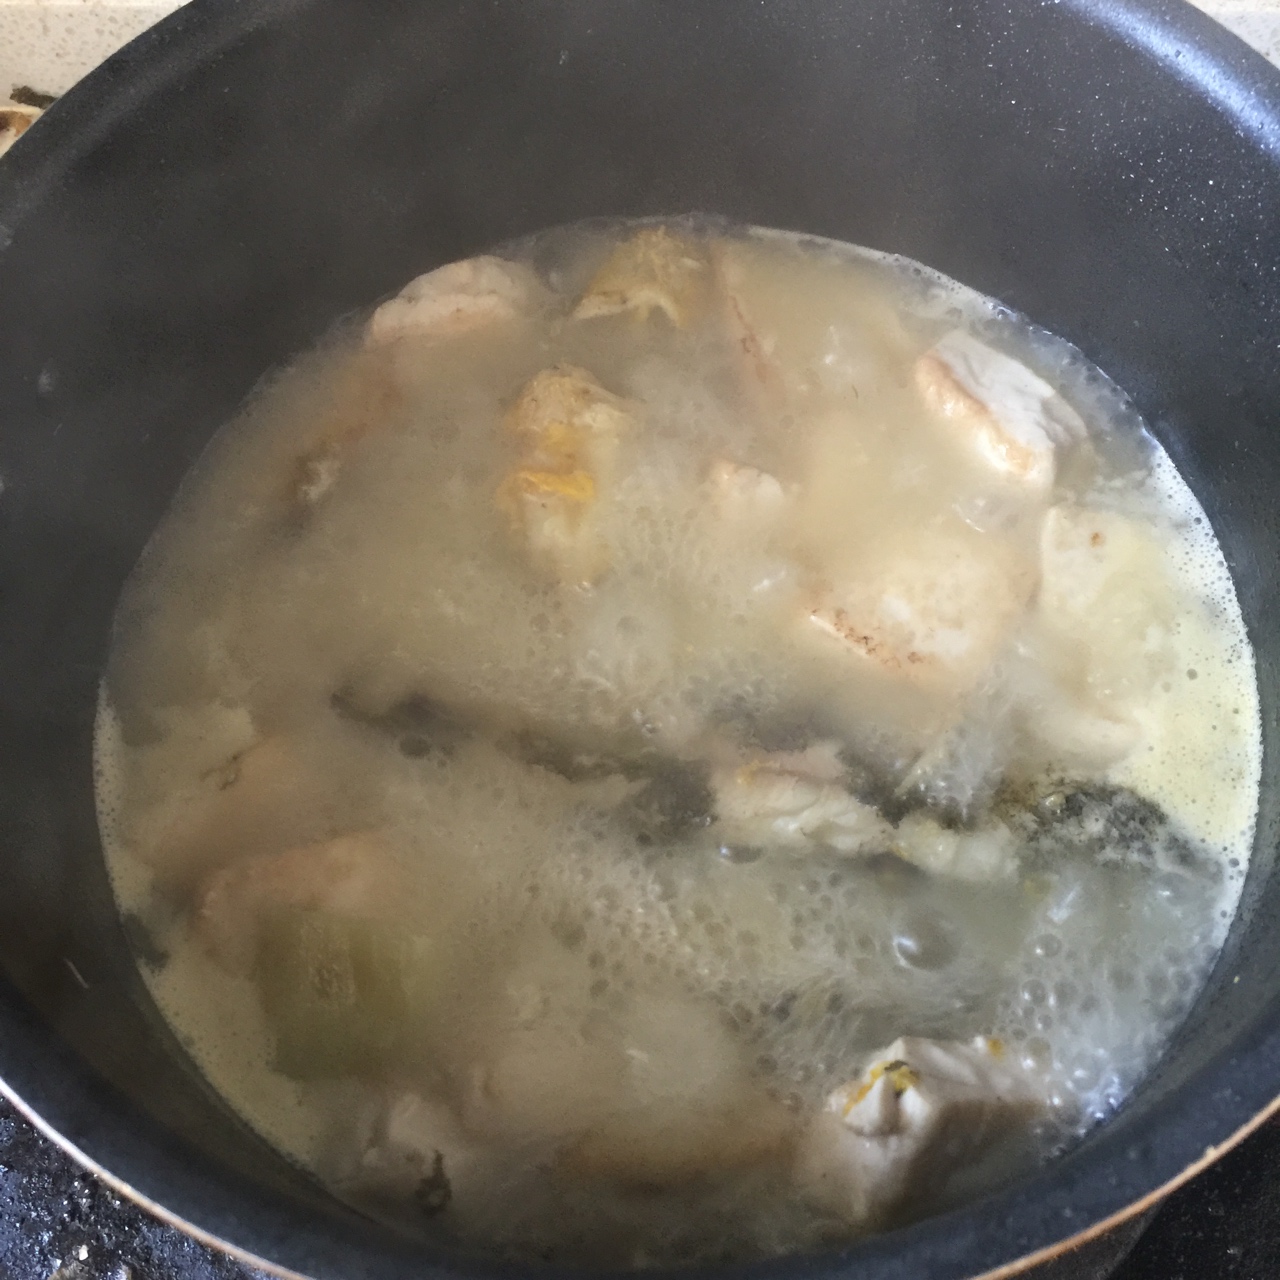 黄骨鱼汤